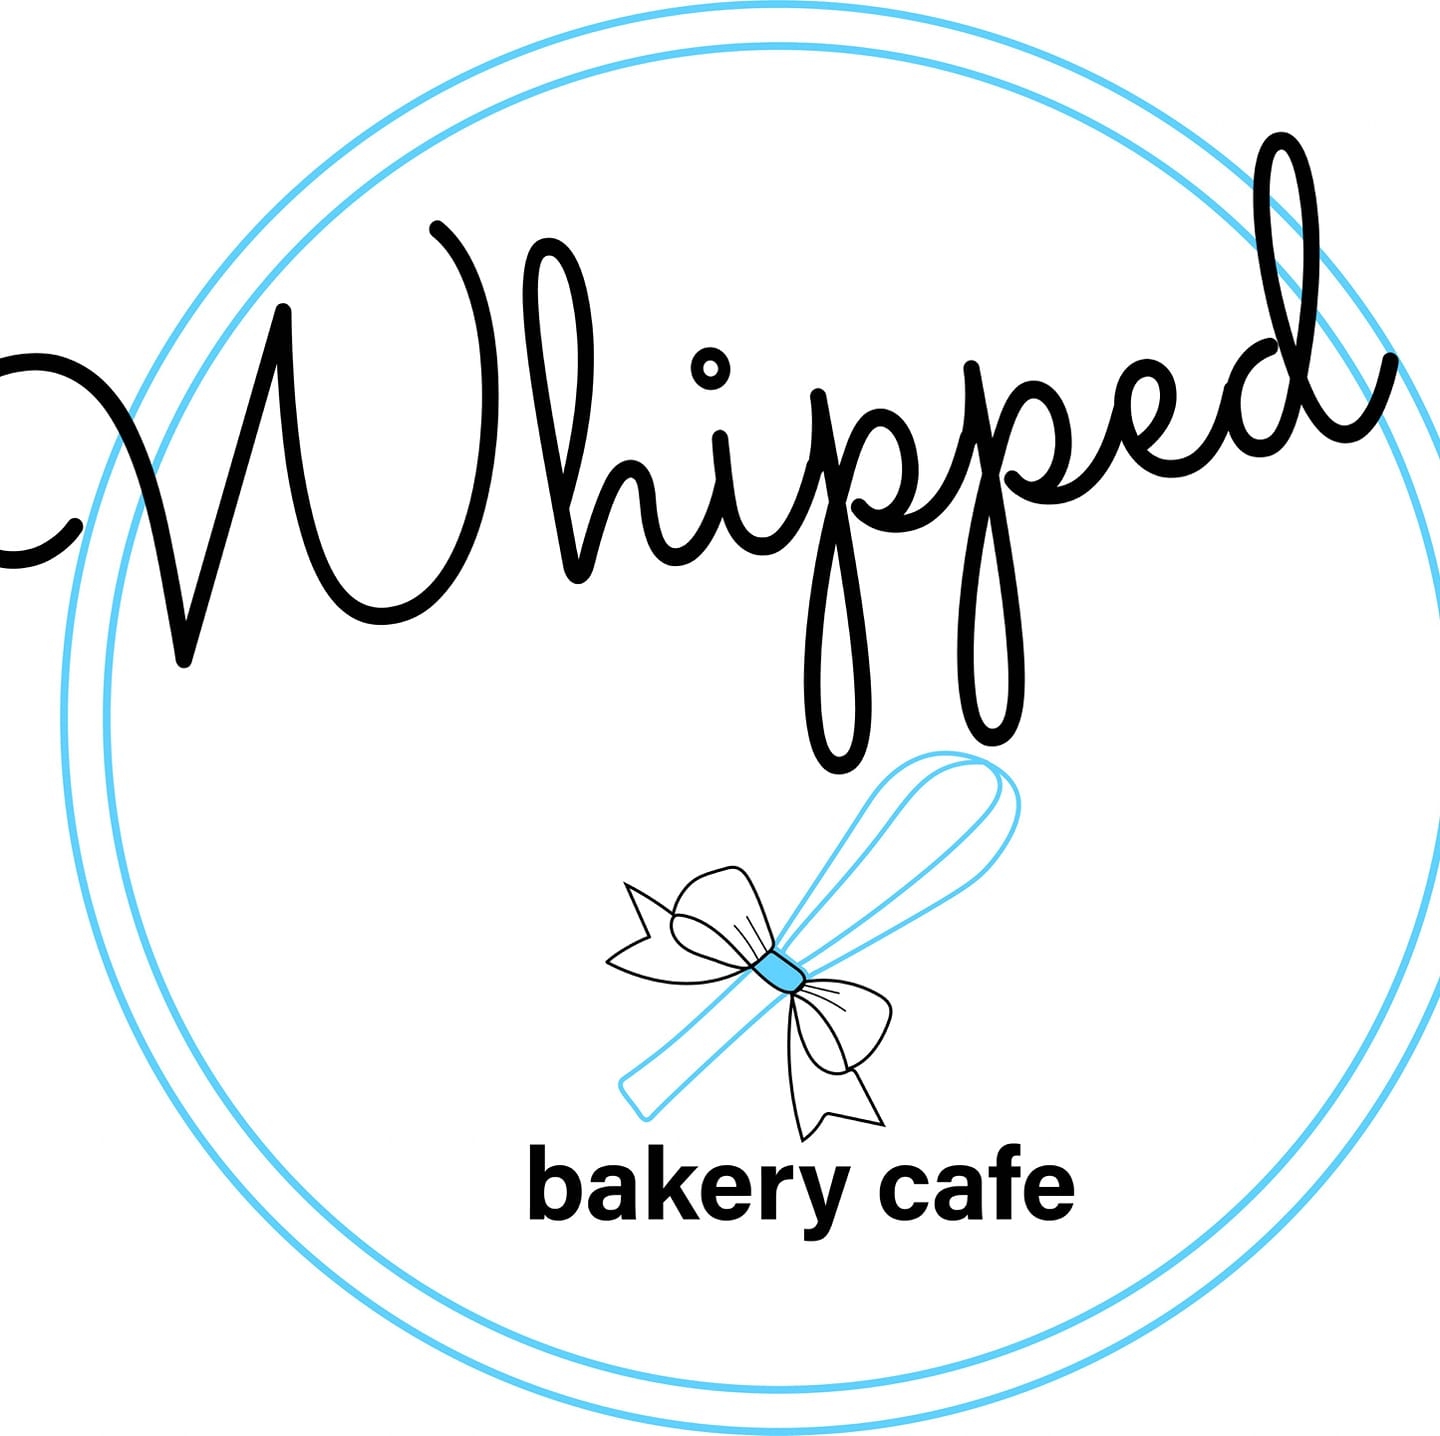 Whipped Bakery Cafe Logo